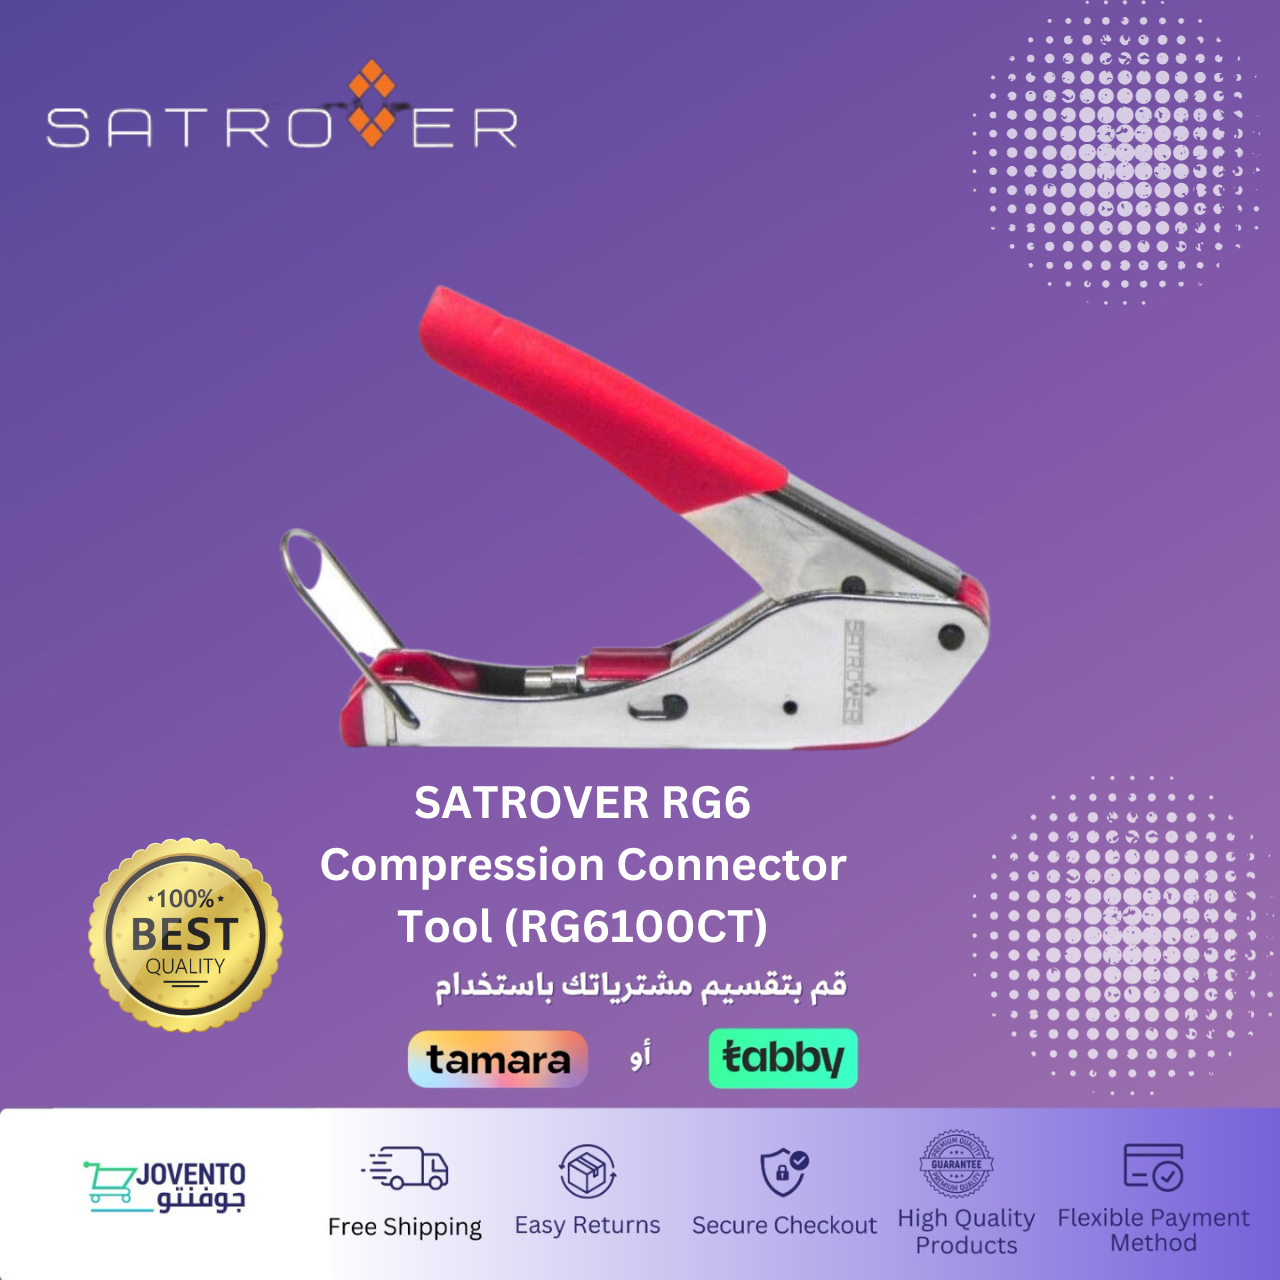 SATROVER RG6 Compression Connector Tool (RG6100CT)